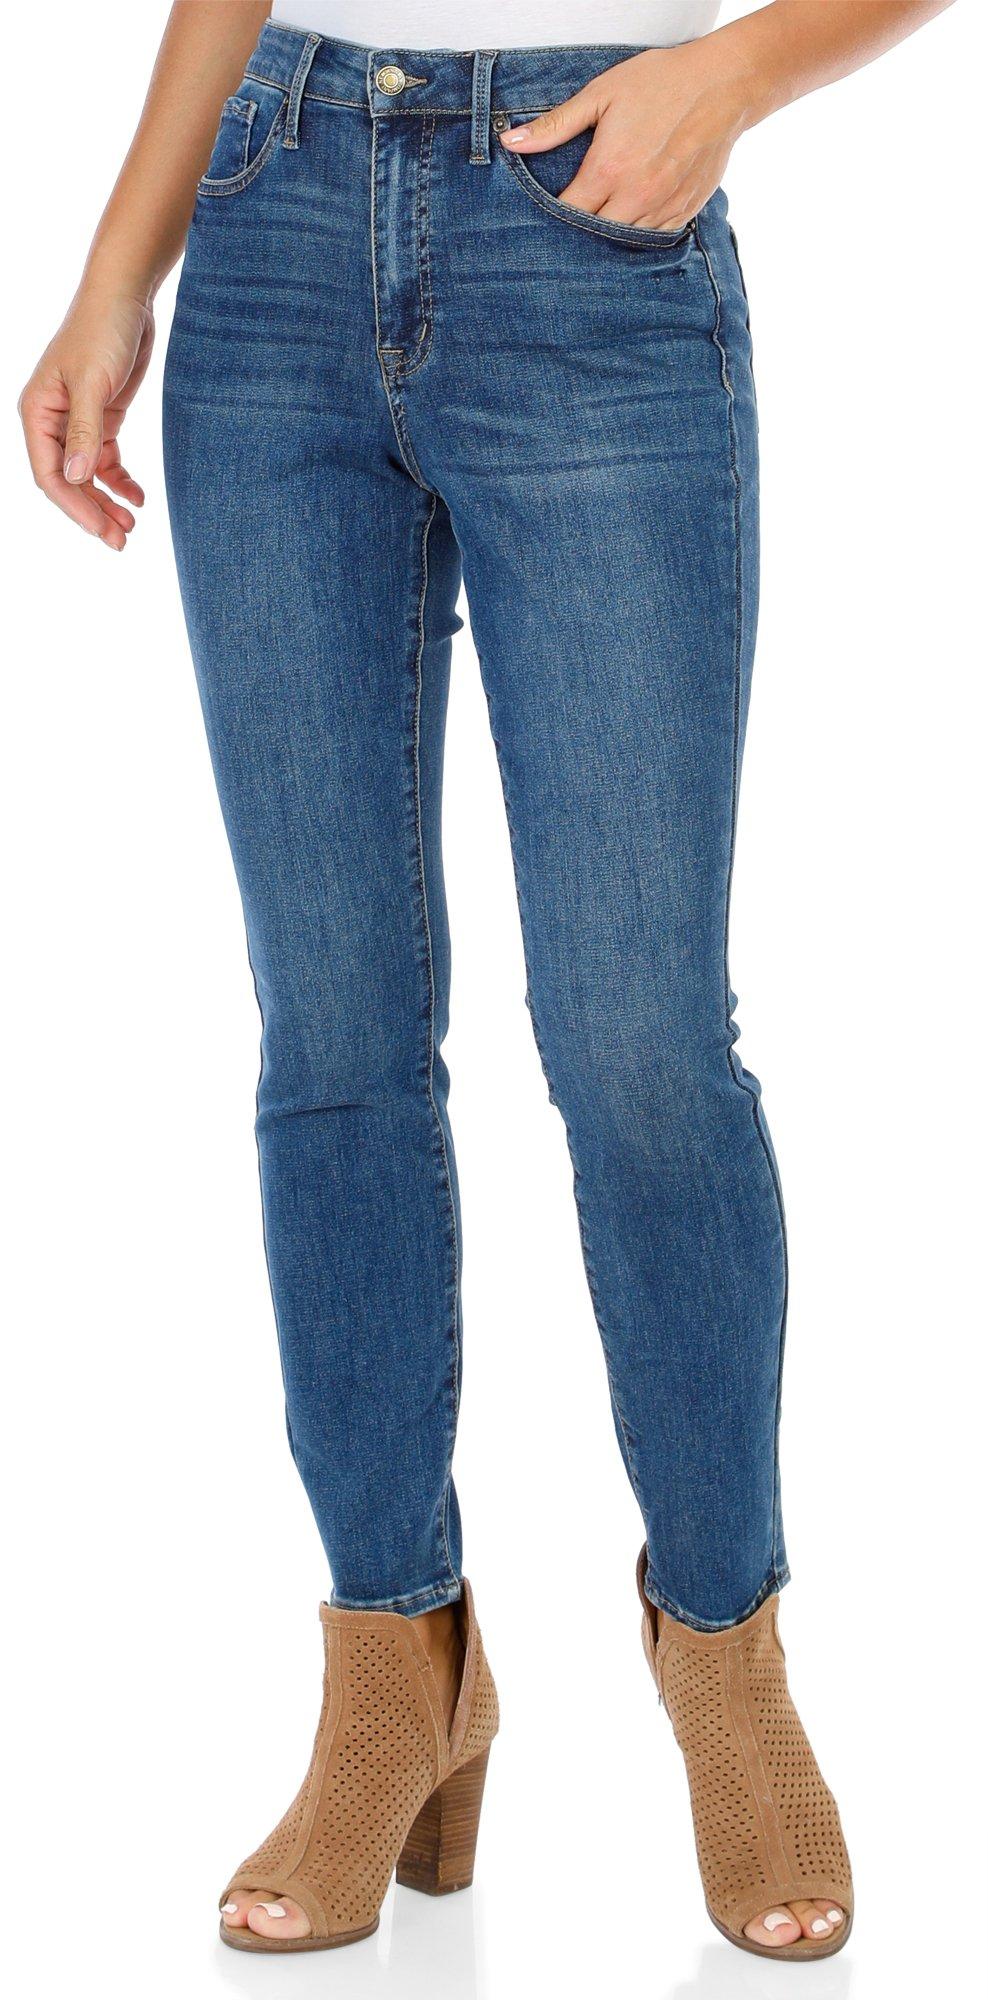 Women's Skinny Fit Jeans